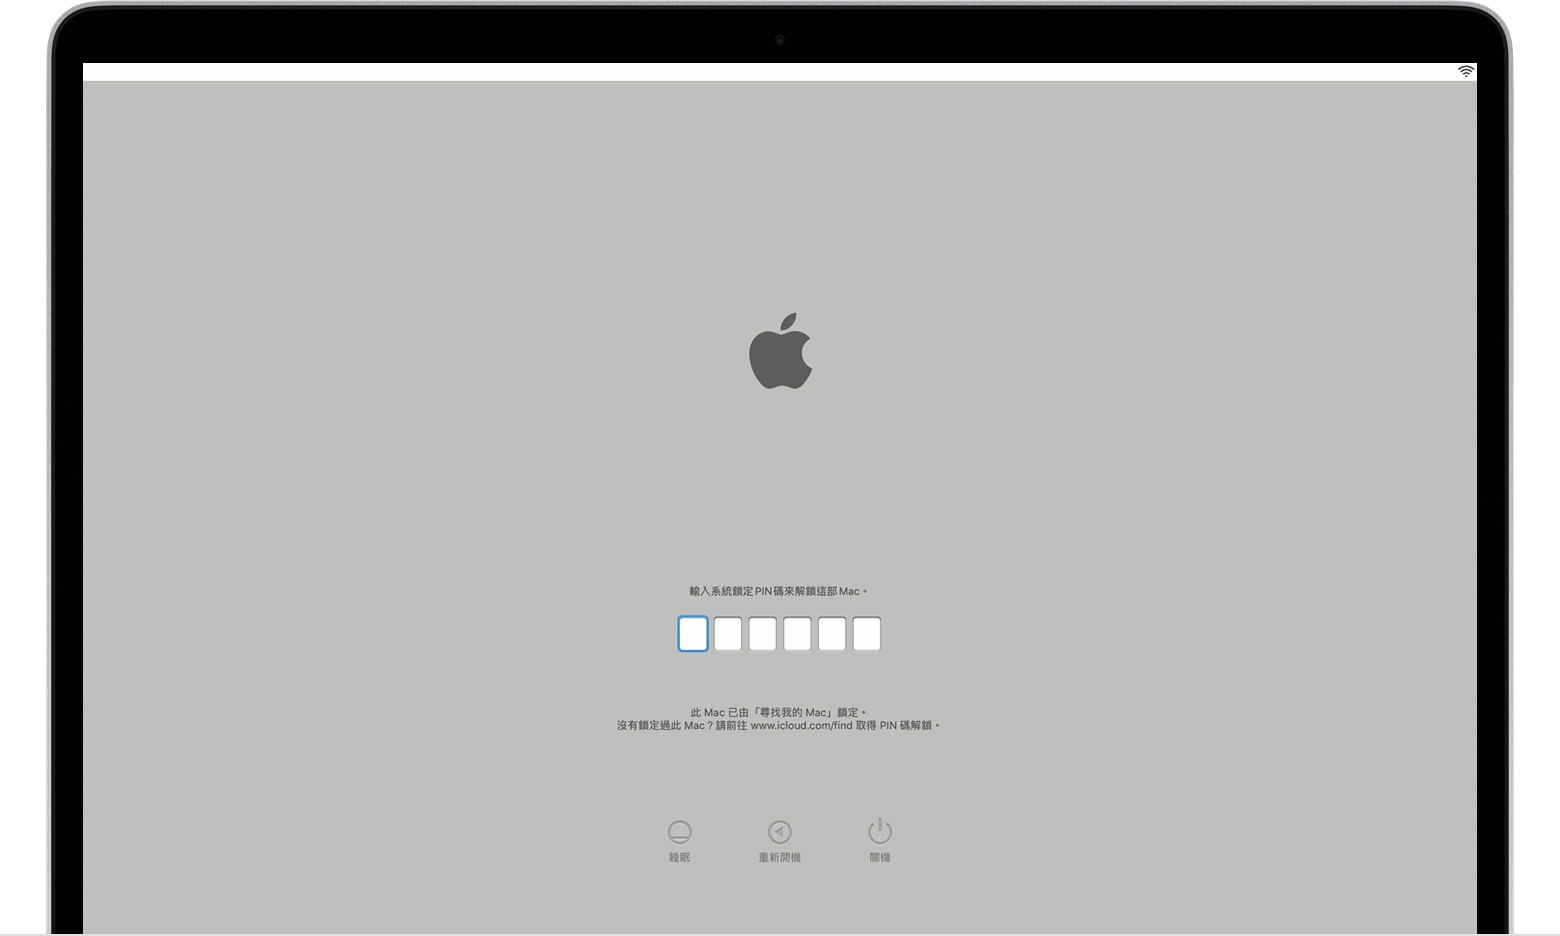 macOS 系統鎖定 PIN 碼啟動畫面